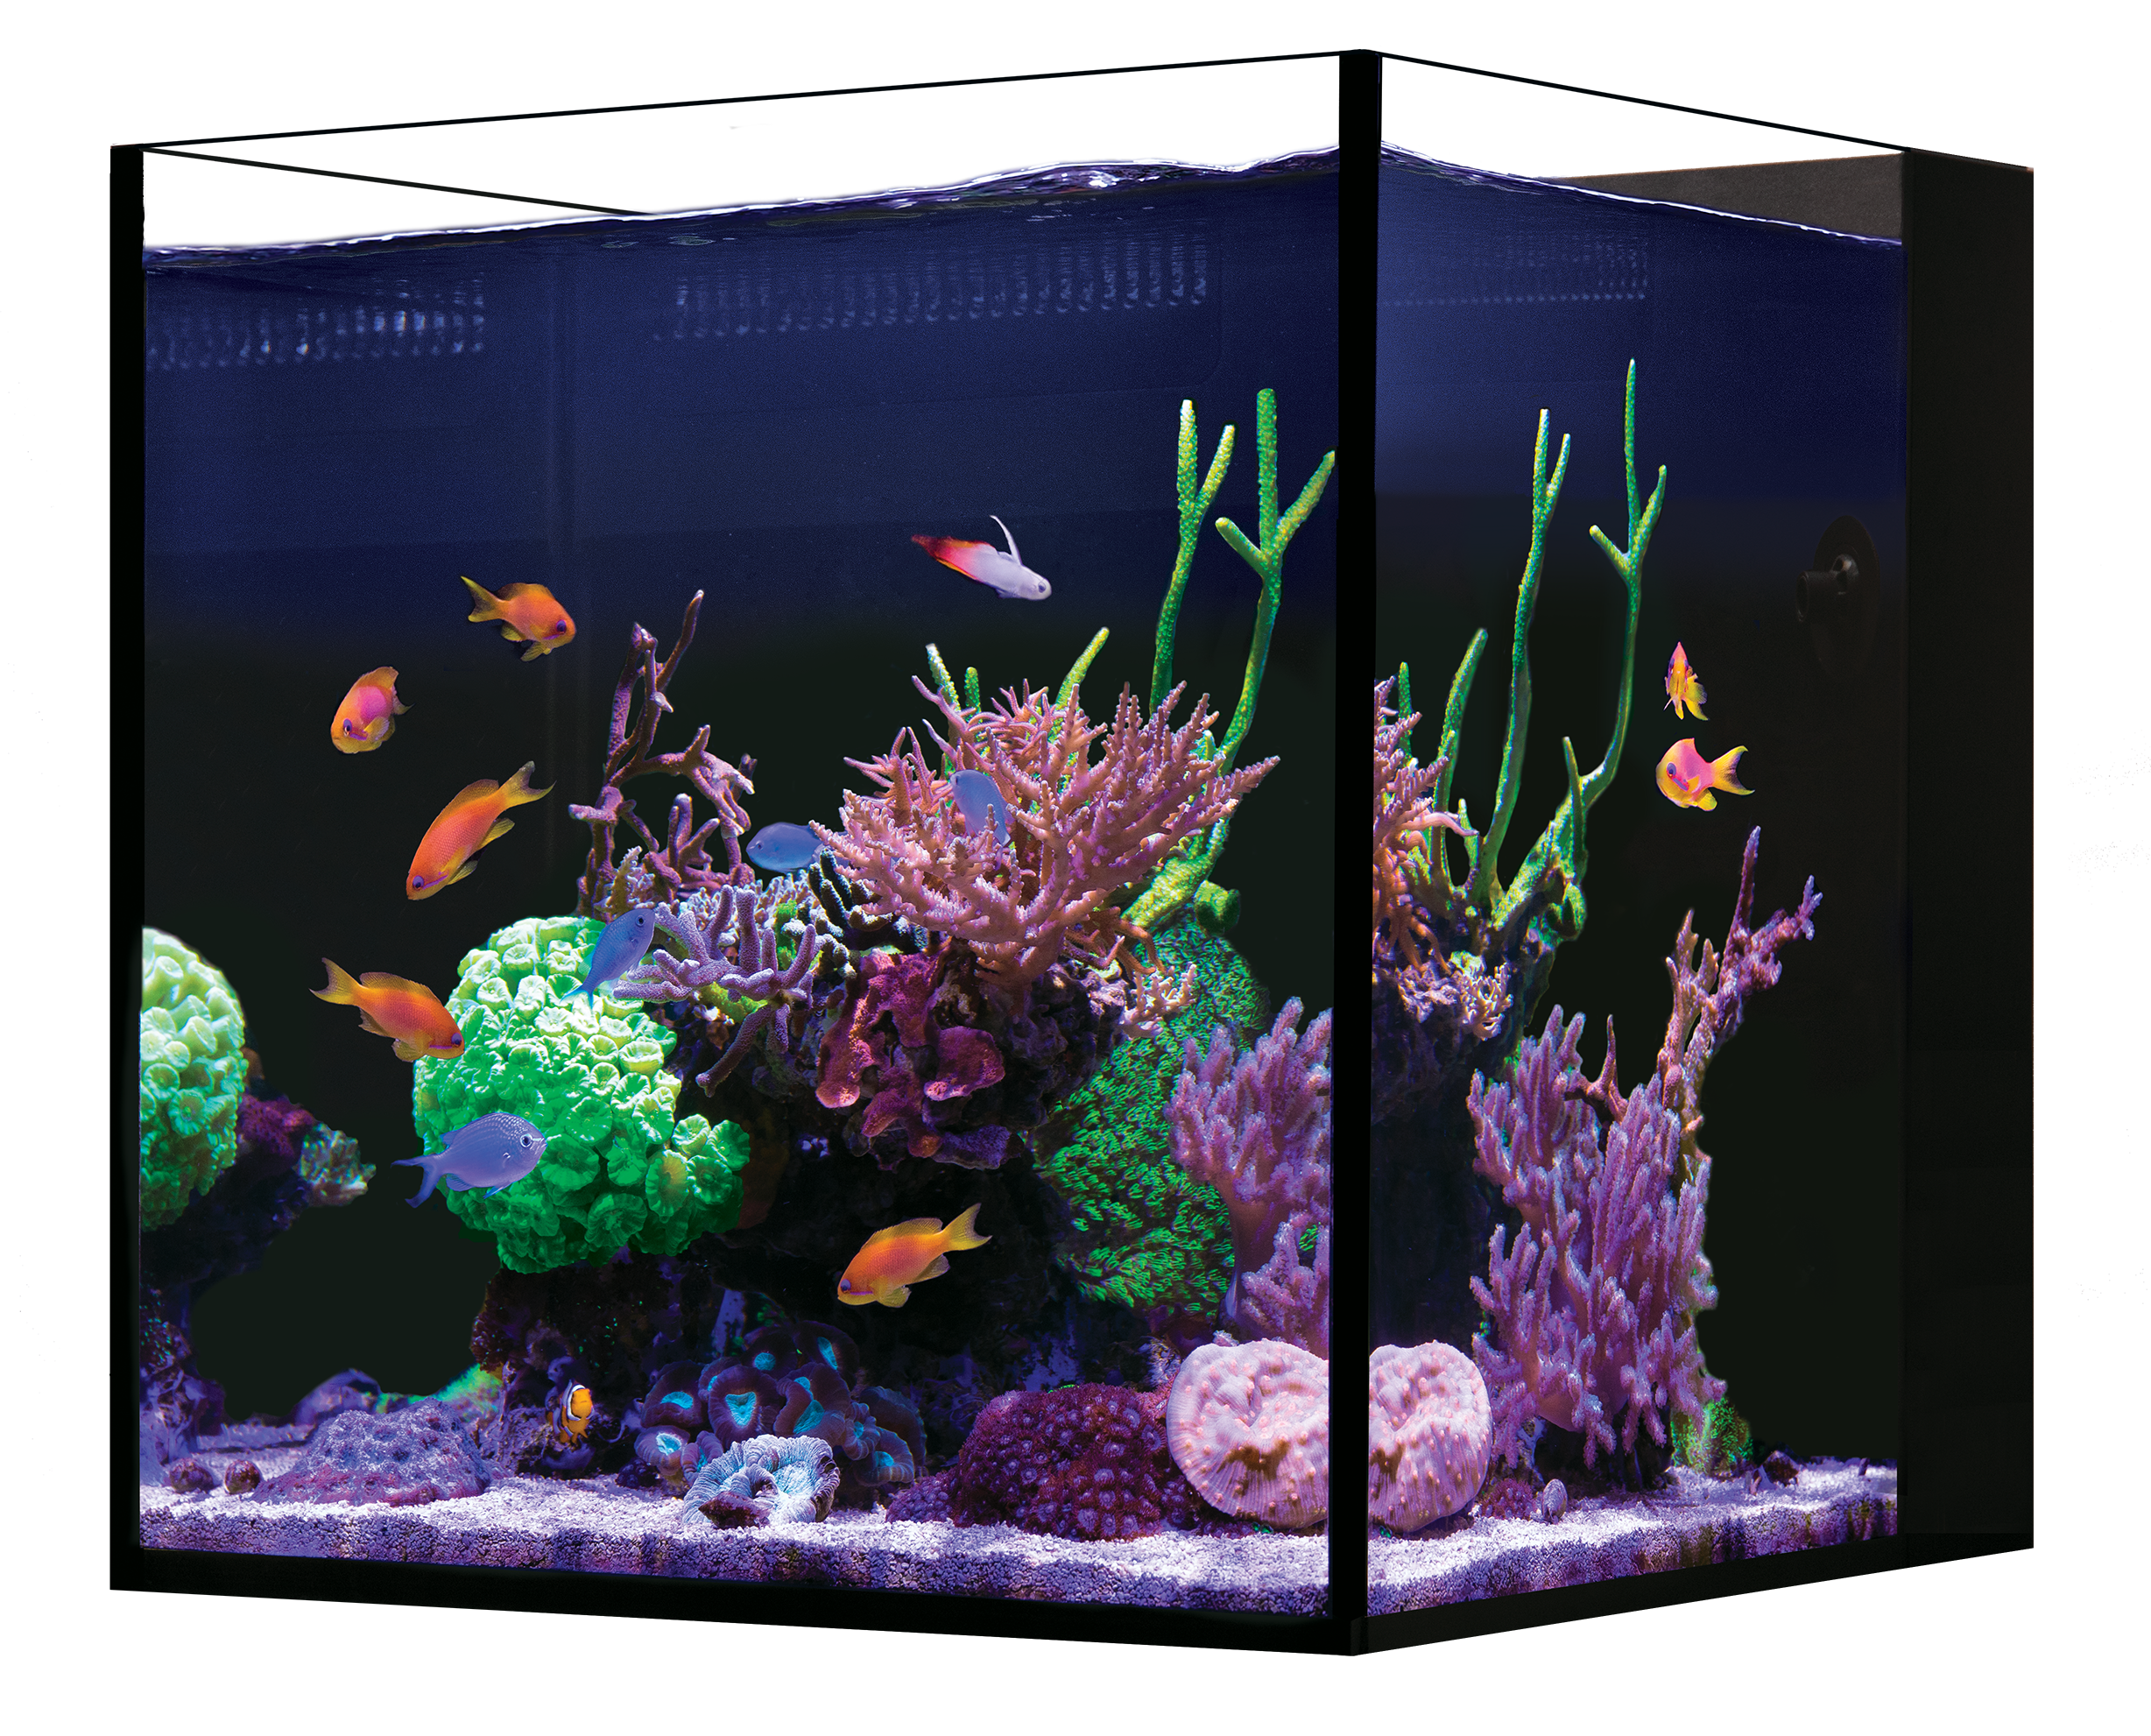 Red Sea Desktop Cube Aquarium And Cabinet